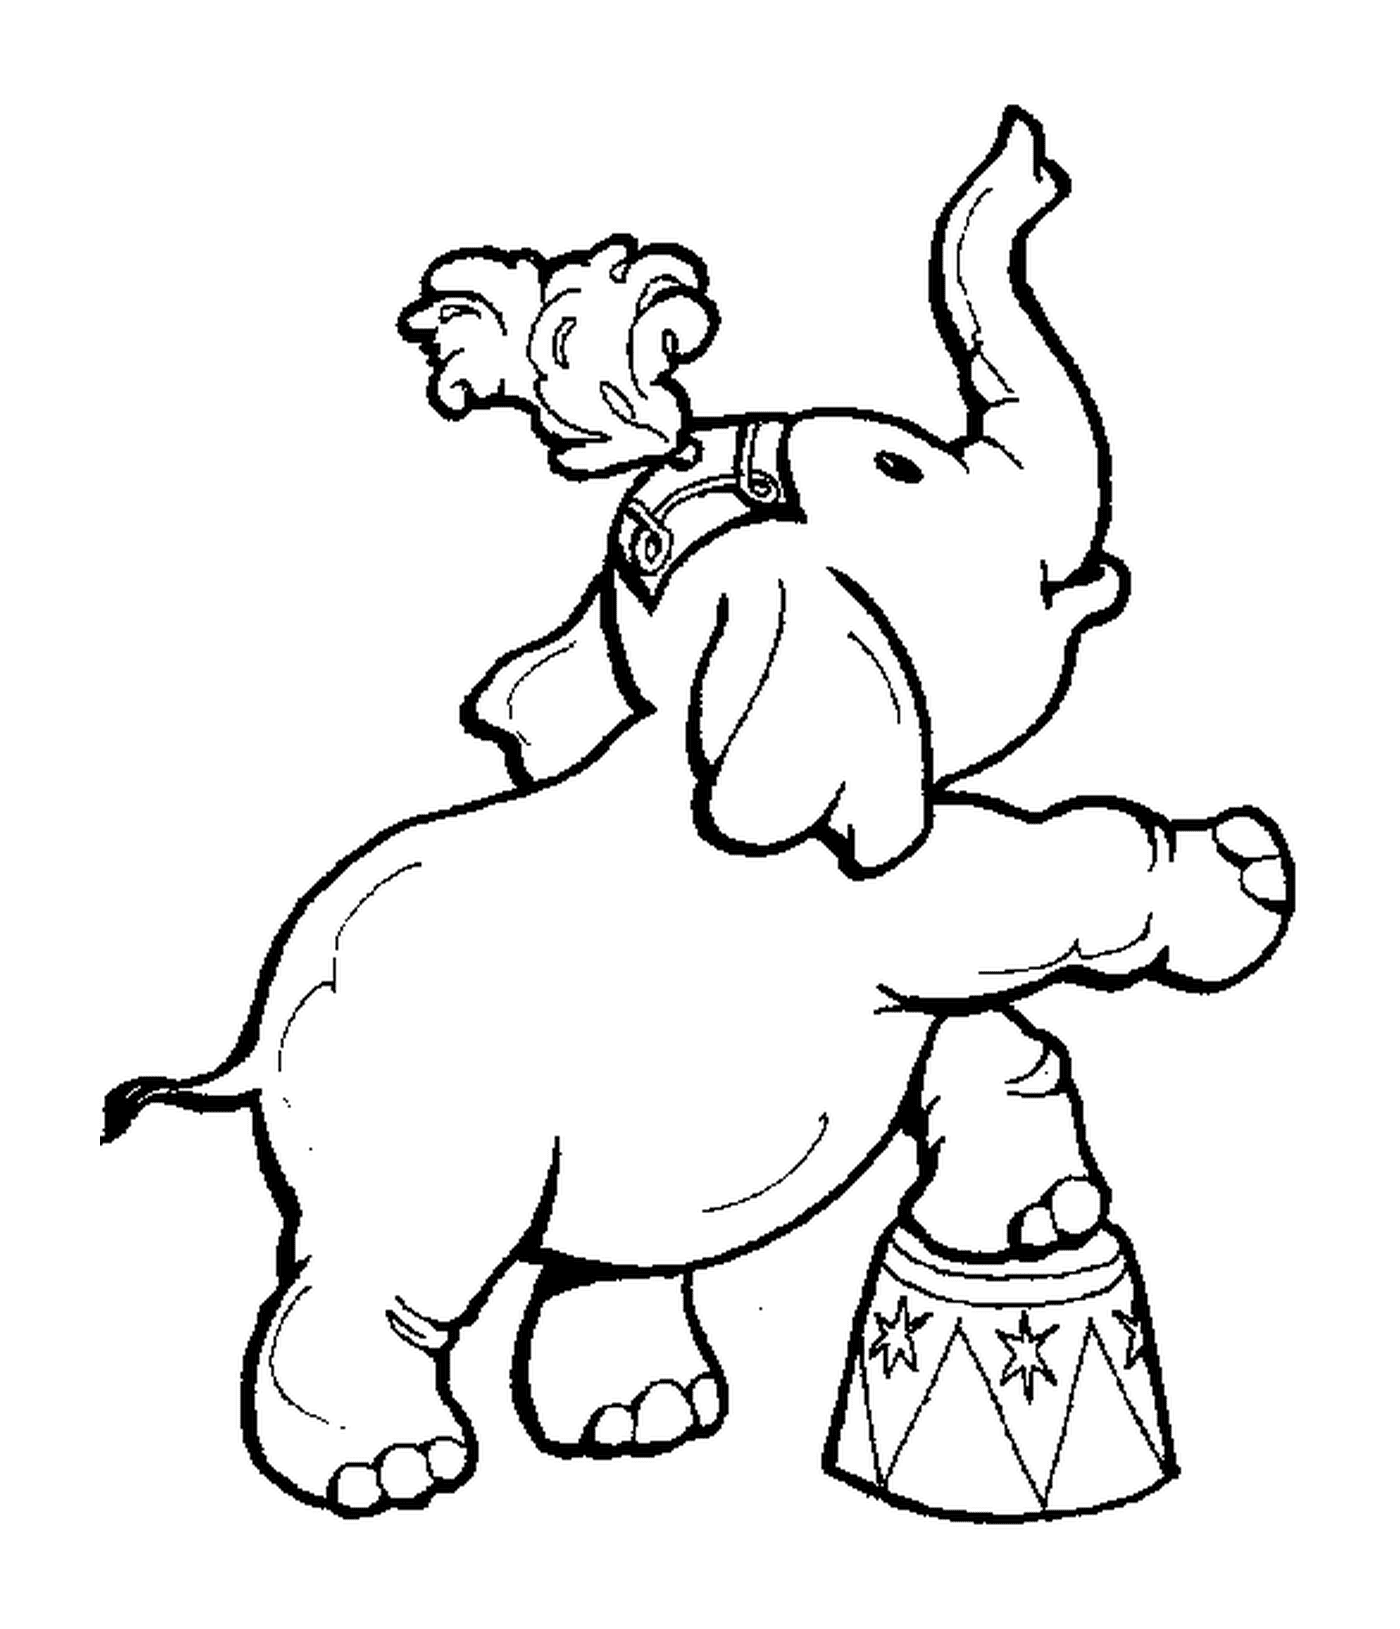  Un elefante de pie sobre un tambor 